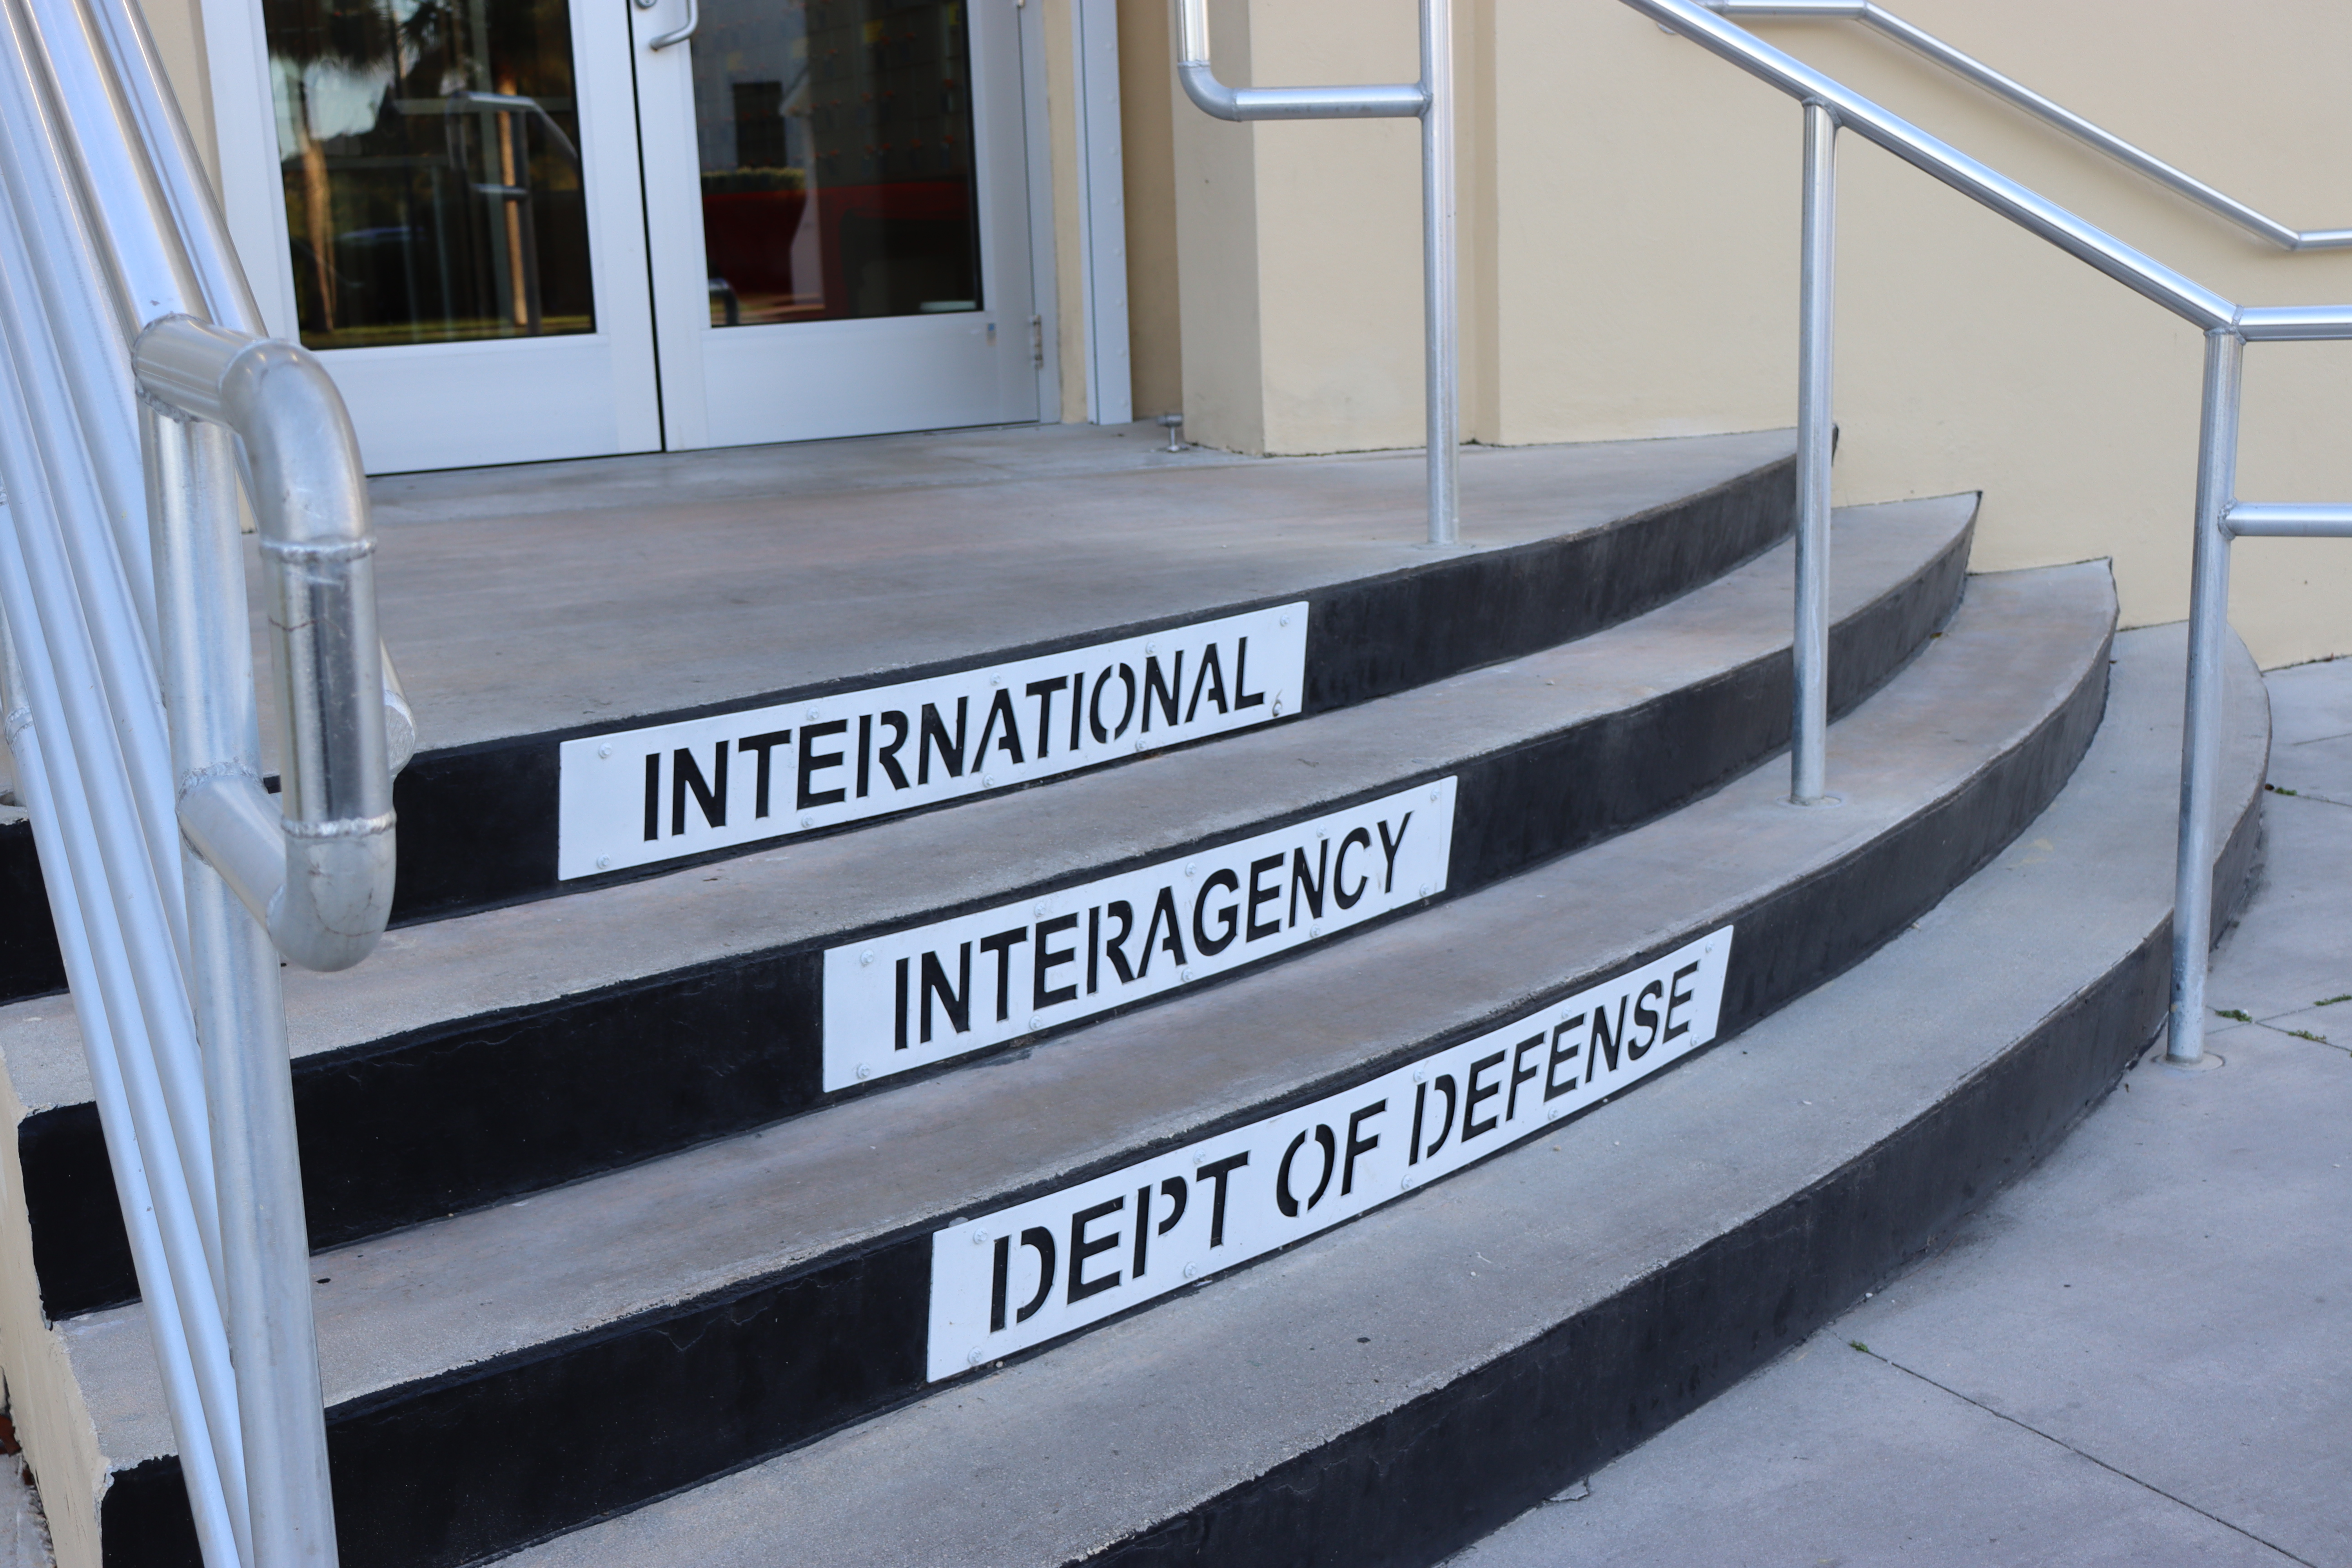 International - Interagency - Dept of Defense